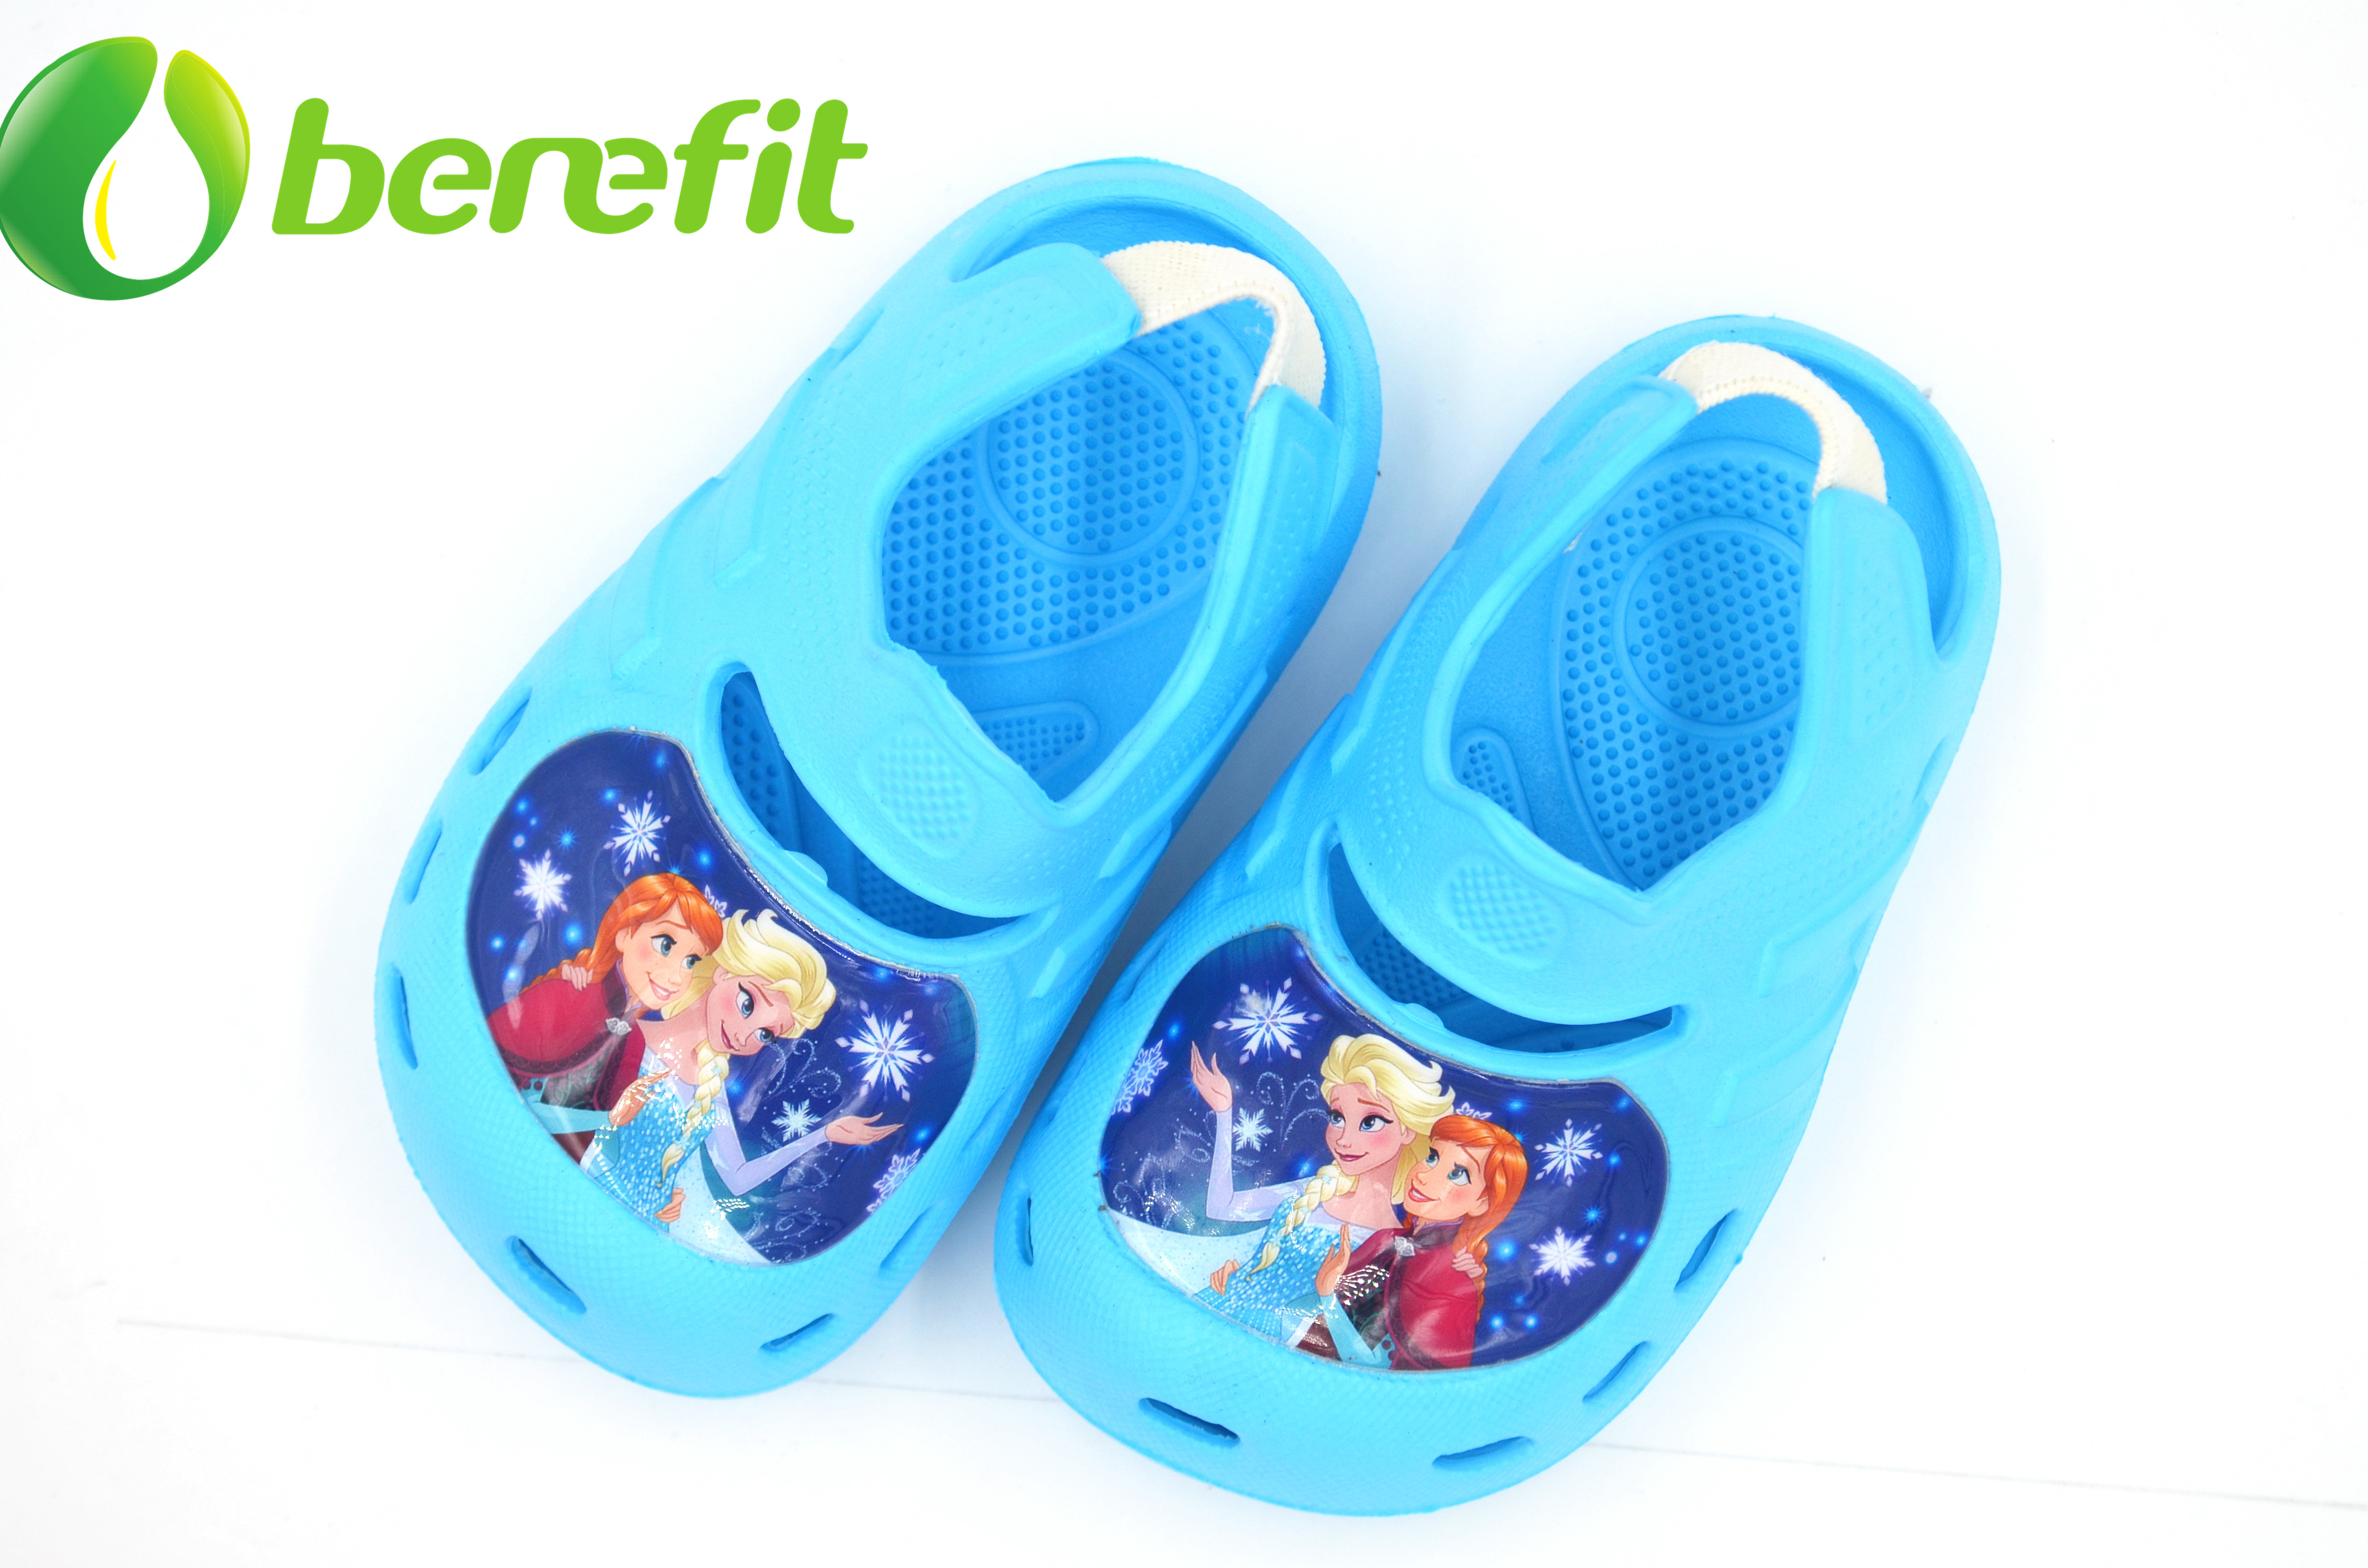 Sandalias para niños con suela de plataforma para temporada de verano y buenas para caminar